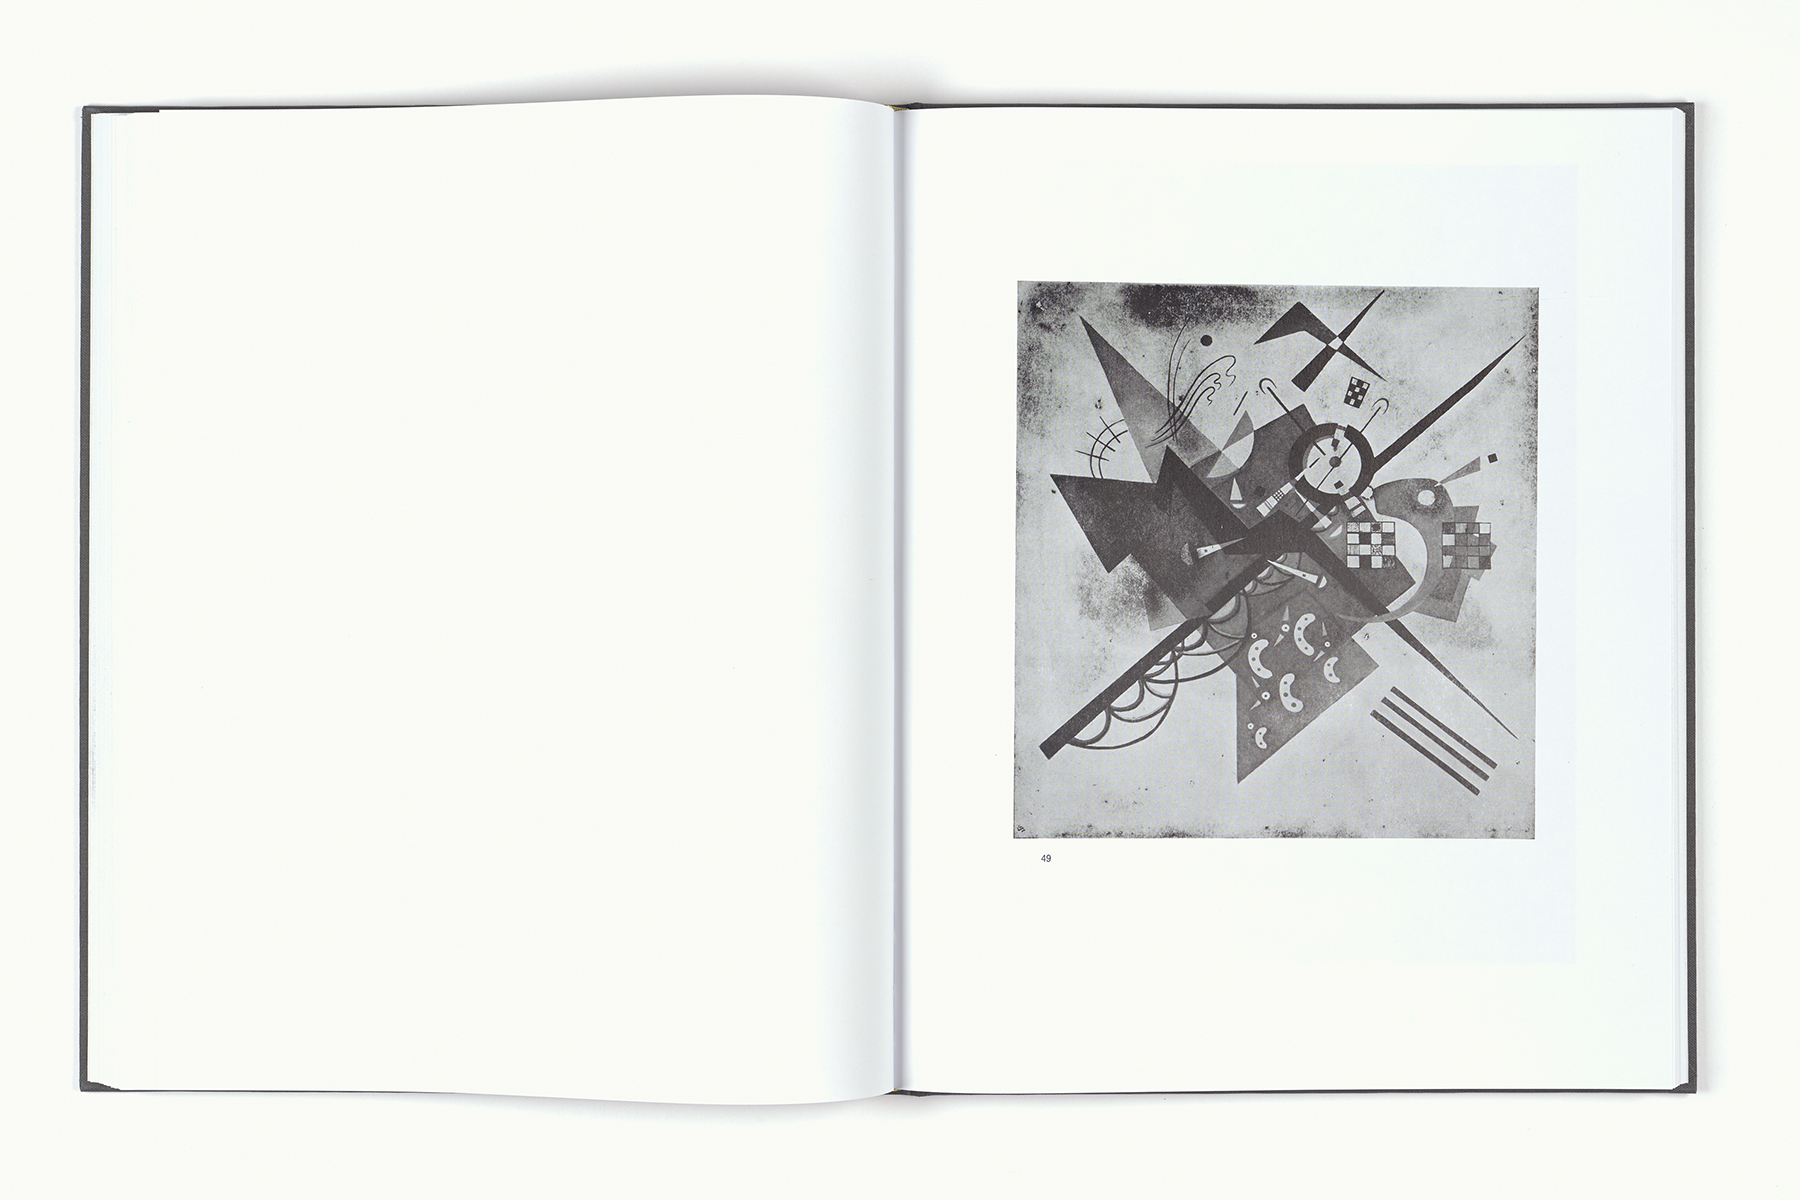 Matthias Gabi Clichés Kunsthalle Bern Artist's Book Künstlerbuch Doppelseite Spread